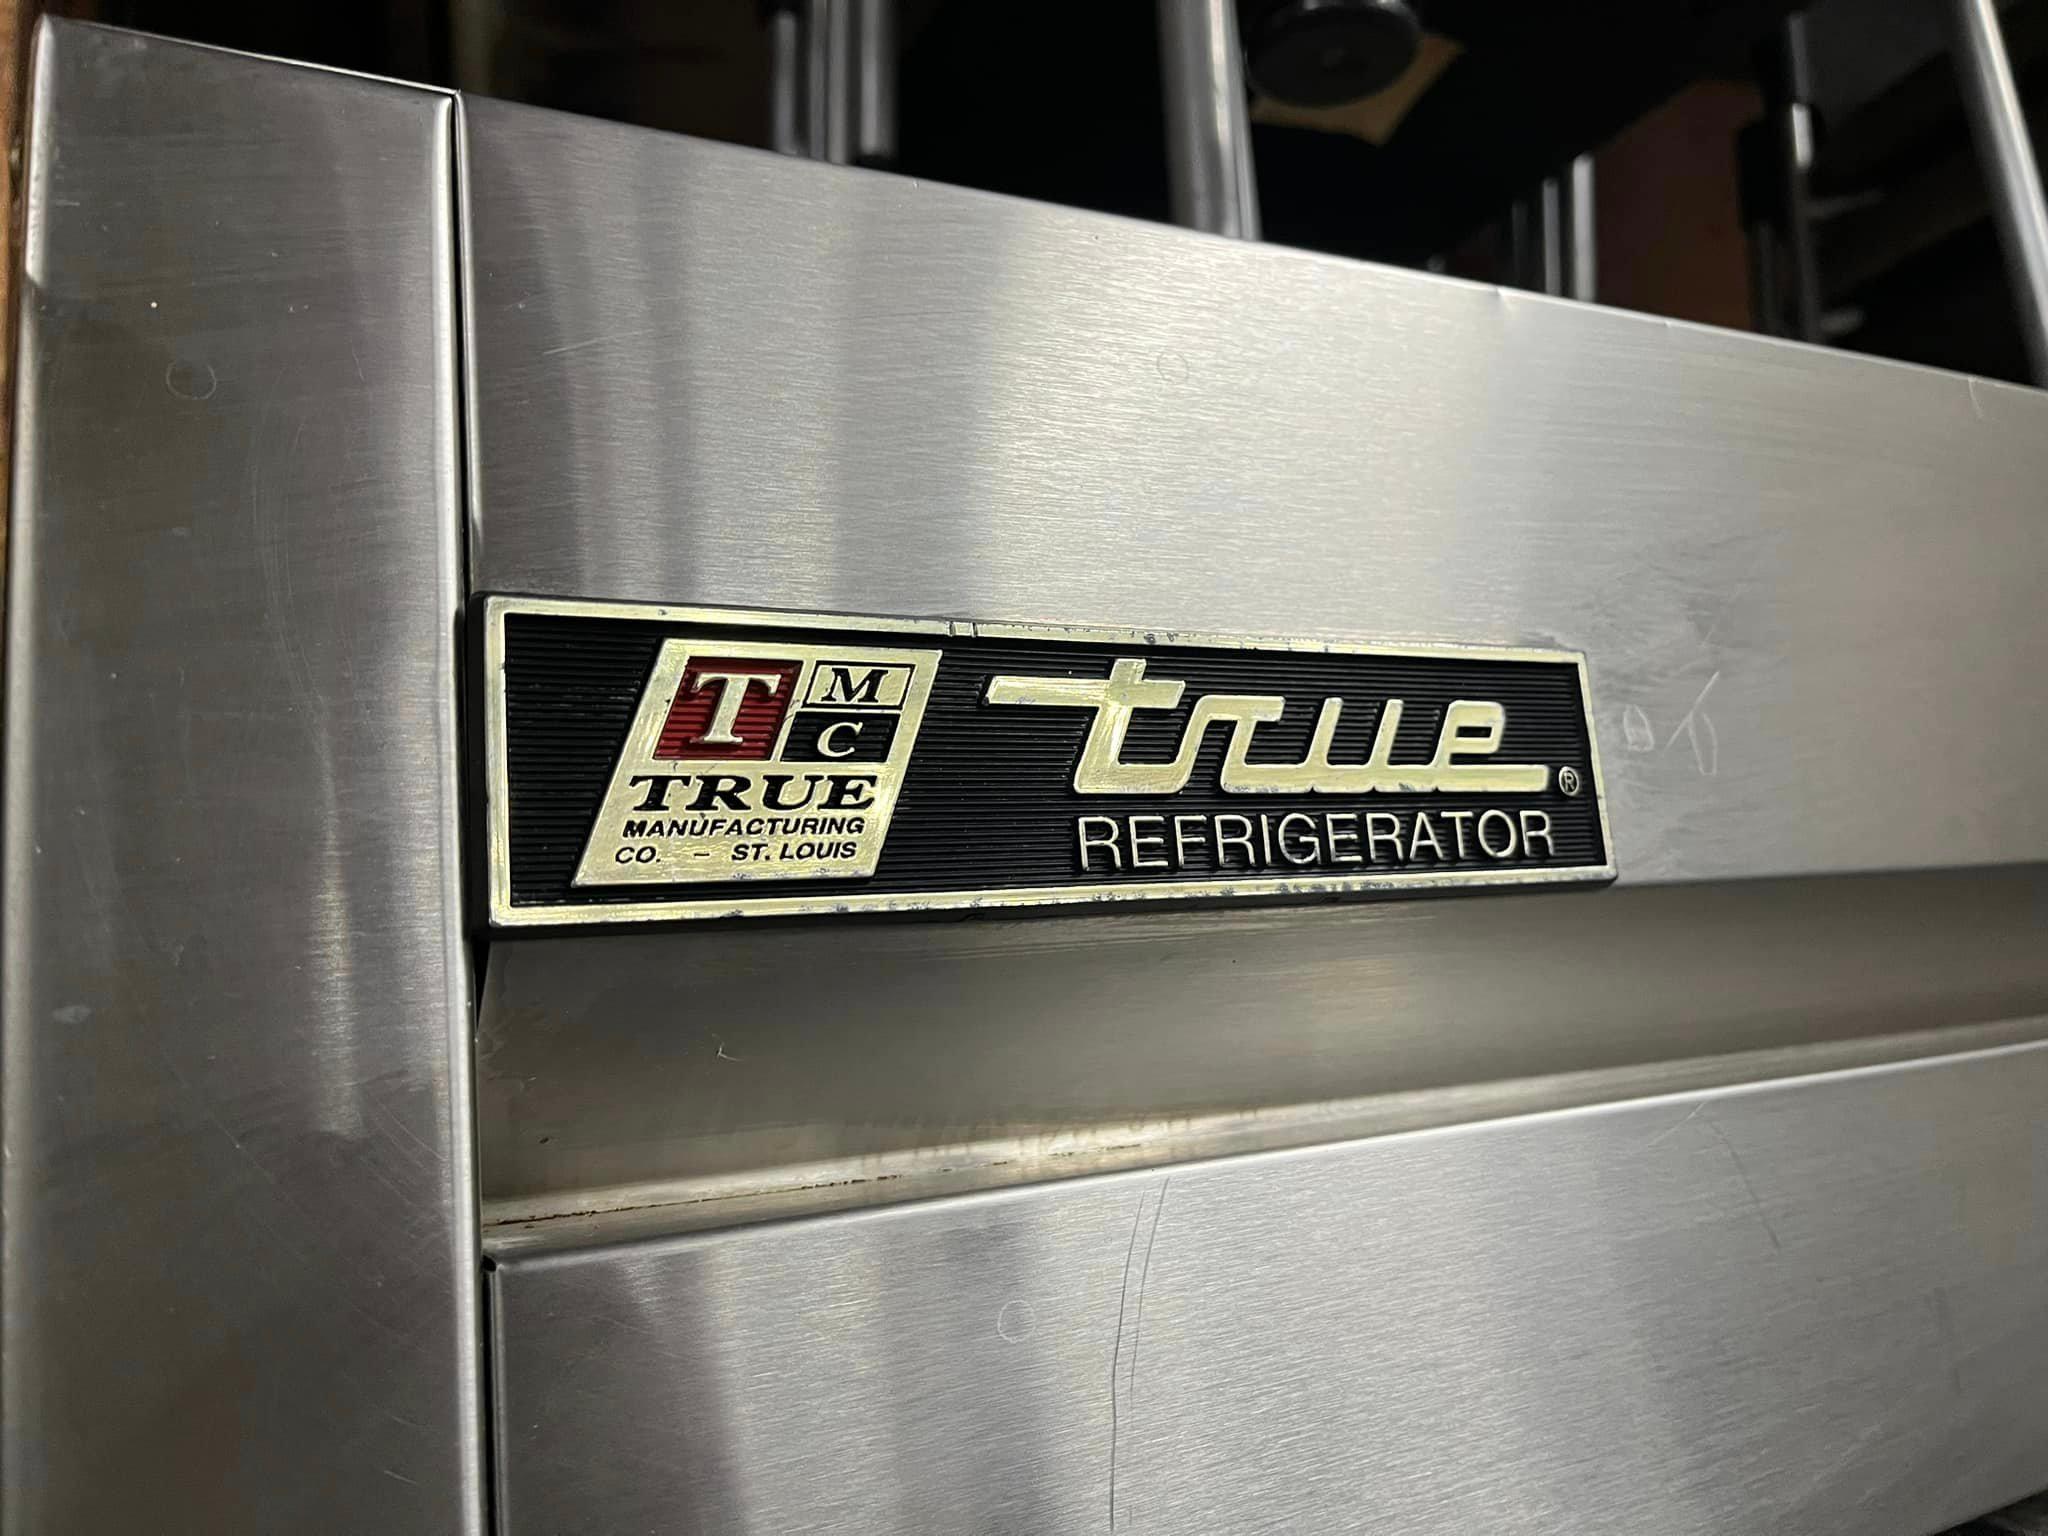 True 3 Door Refrigerator